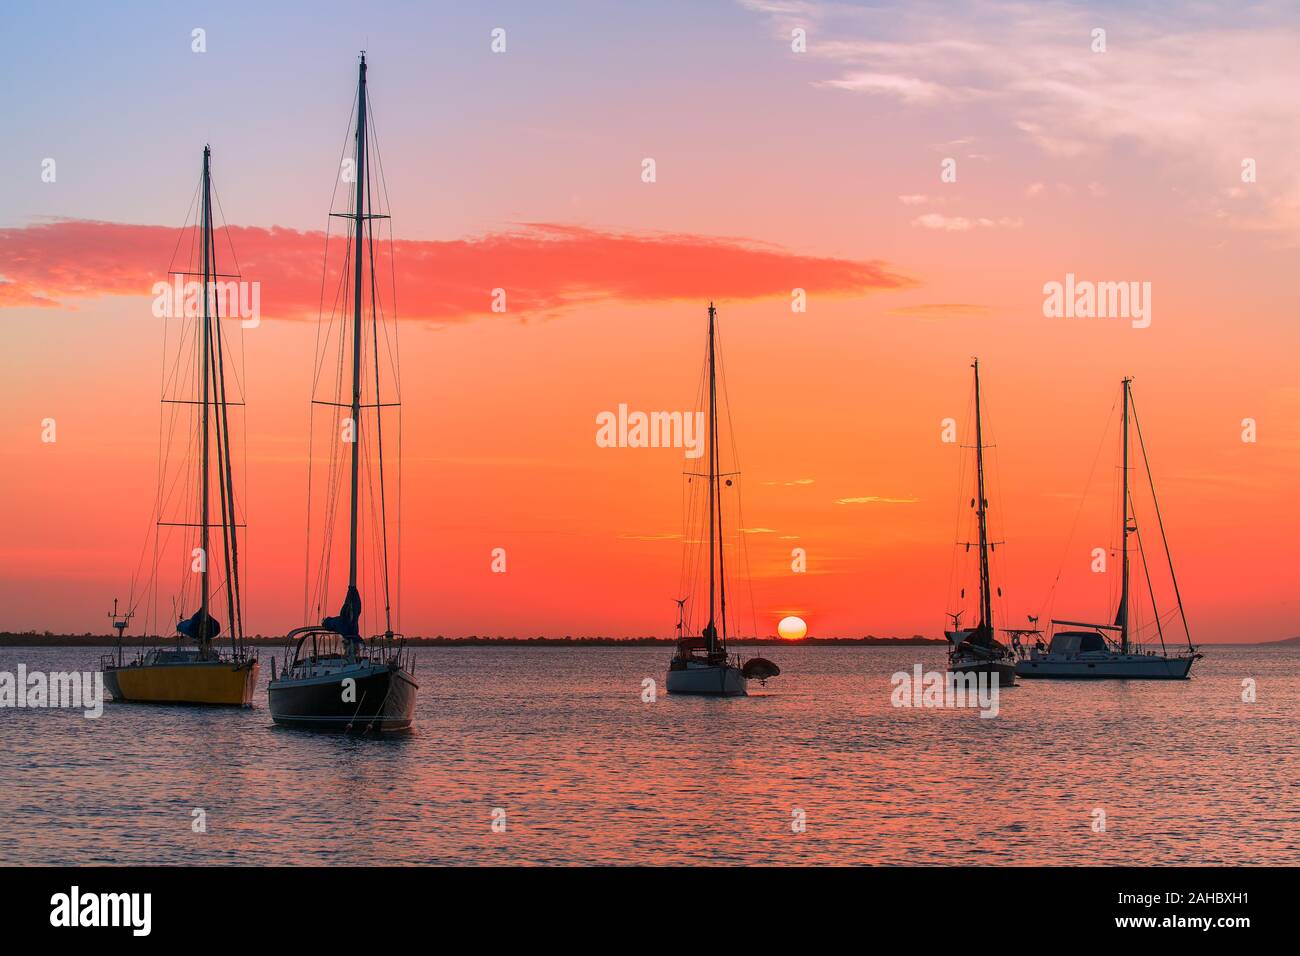 Groupe de cinq voiliers ensemble sur la mer au soleil couchant Banque D'Images